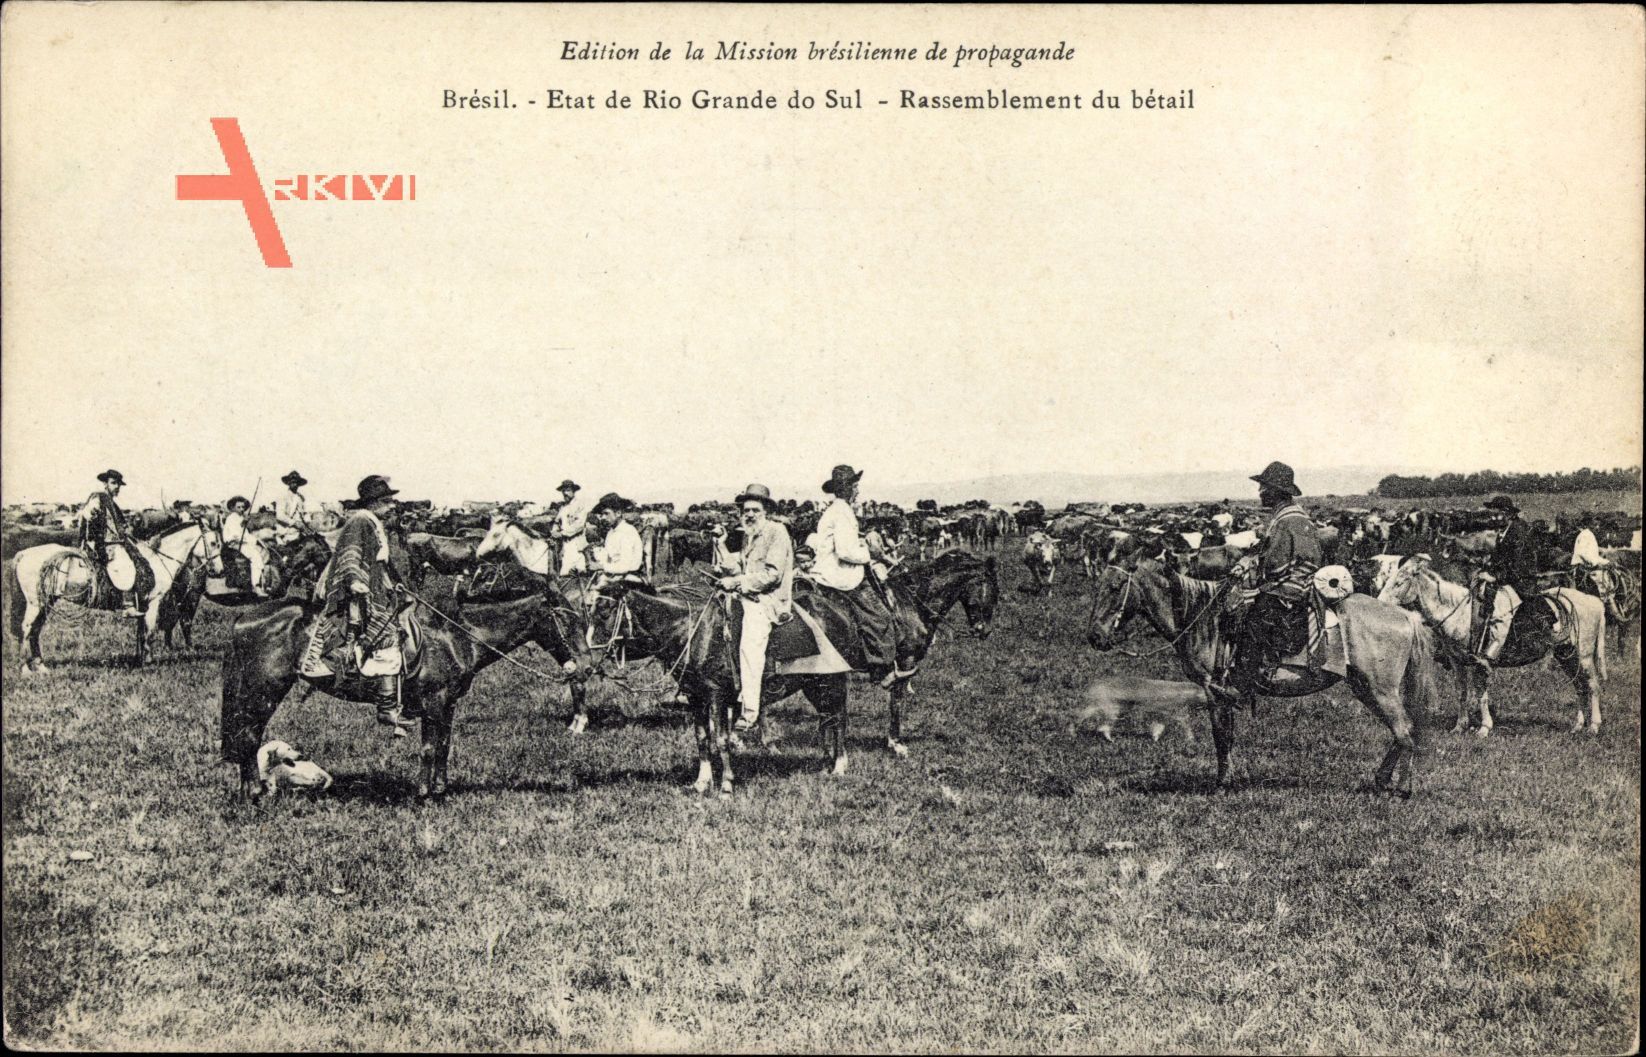 Rio Grande do Sul Brasilien, Rassemblement du bétail, Cowboys